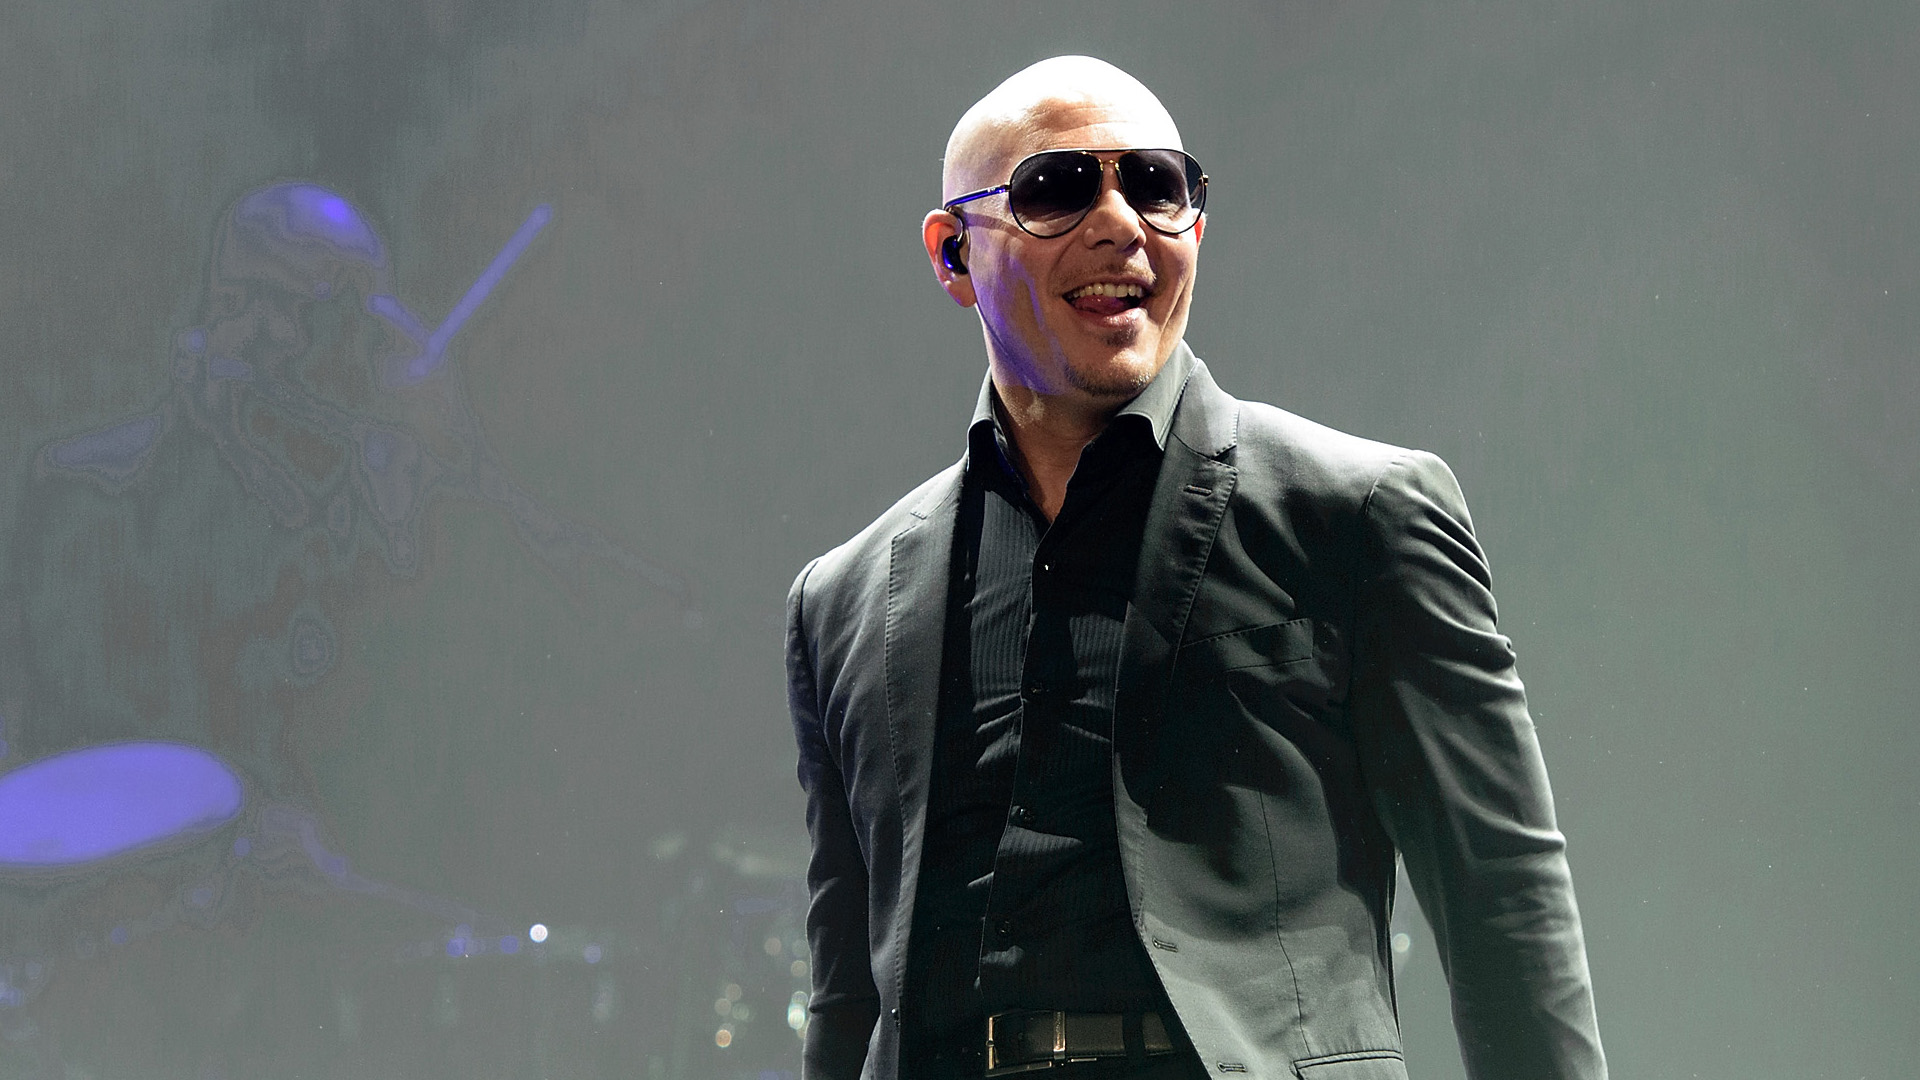 Pitbull publica “Greenlight” para anunciar ‘Climate Change’ con las colaboraciones de J. Lo, Enrique Iglesias y ¿Travis Barker?